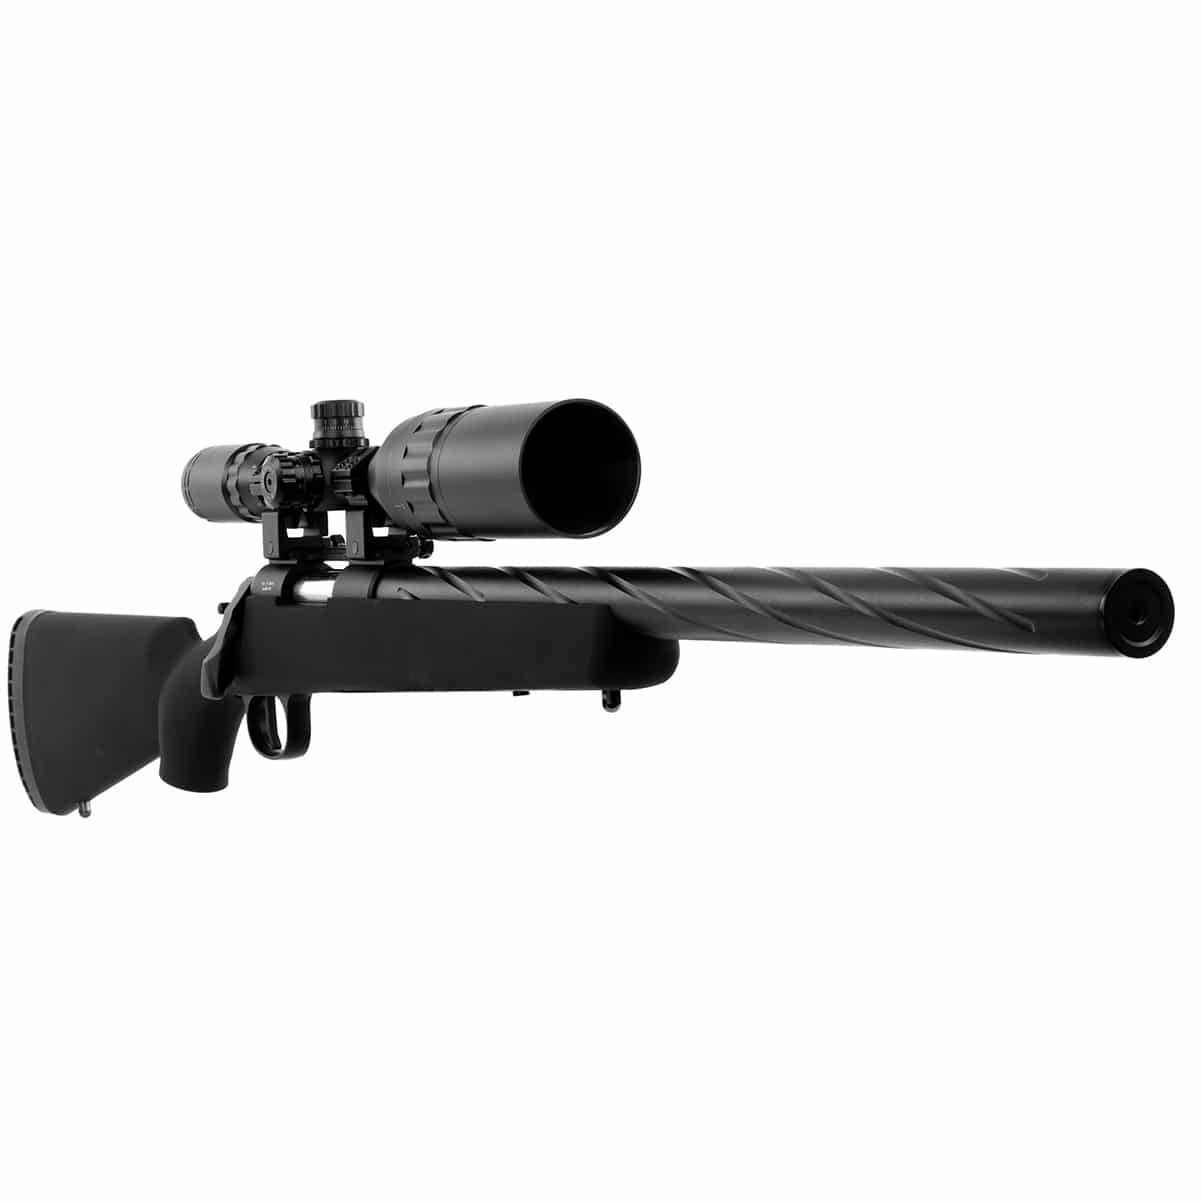 SSG10 A2 Airsoft Sniper Rifle - Novritsch